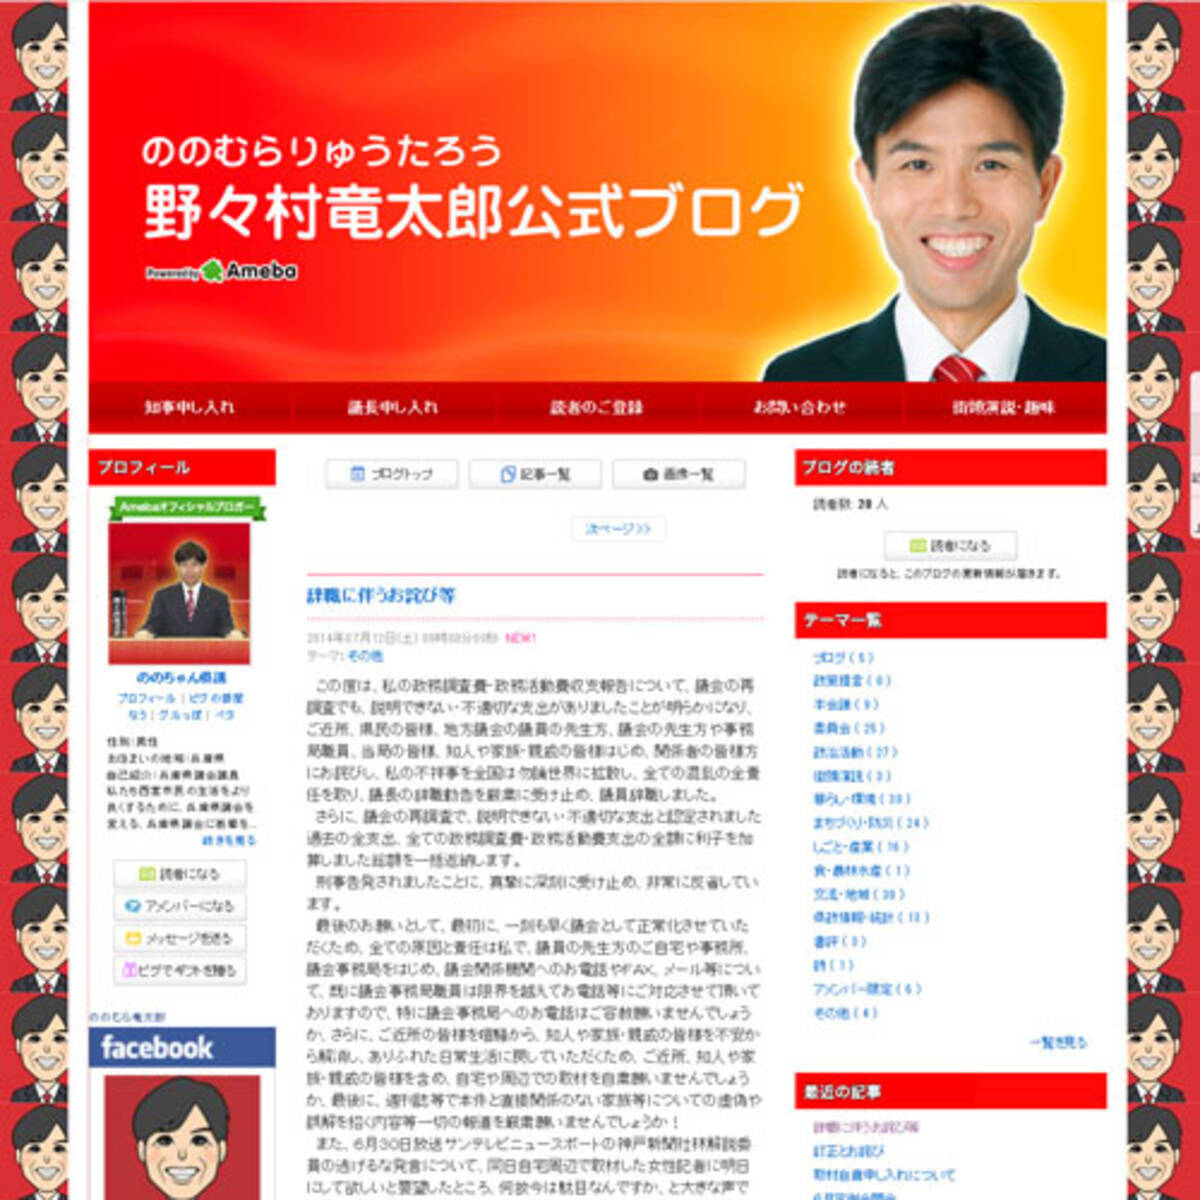 子どものように号泣しました ことをお詫び 議員辞職の野々村竜太郎氏ブログに応援コメントが殺到 14年7月12日 エキサイトニュース